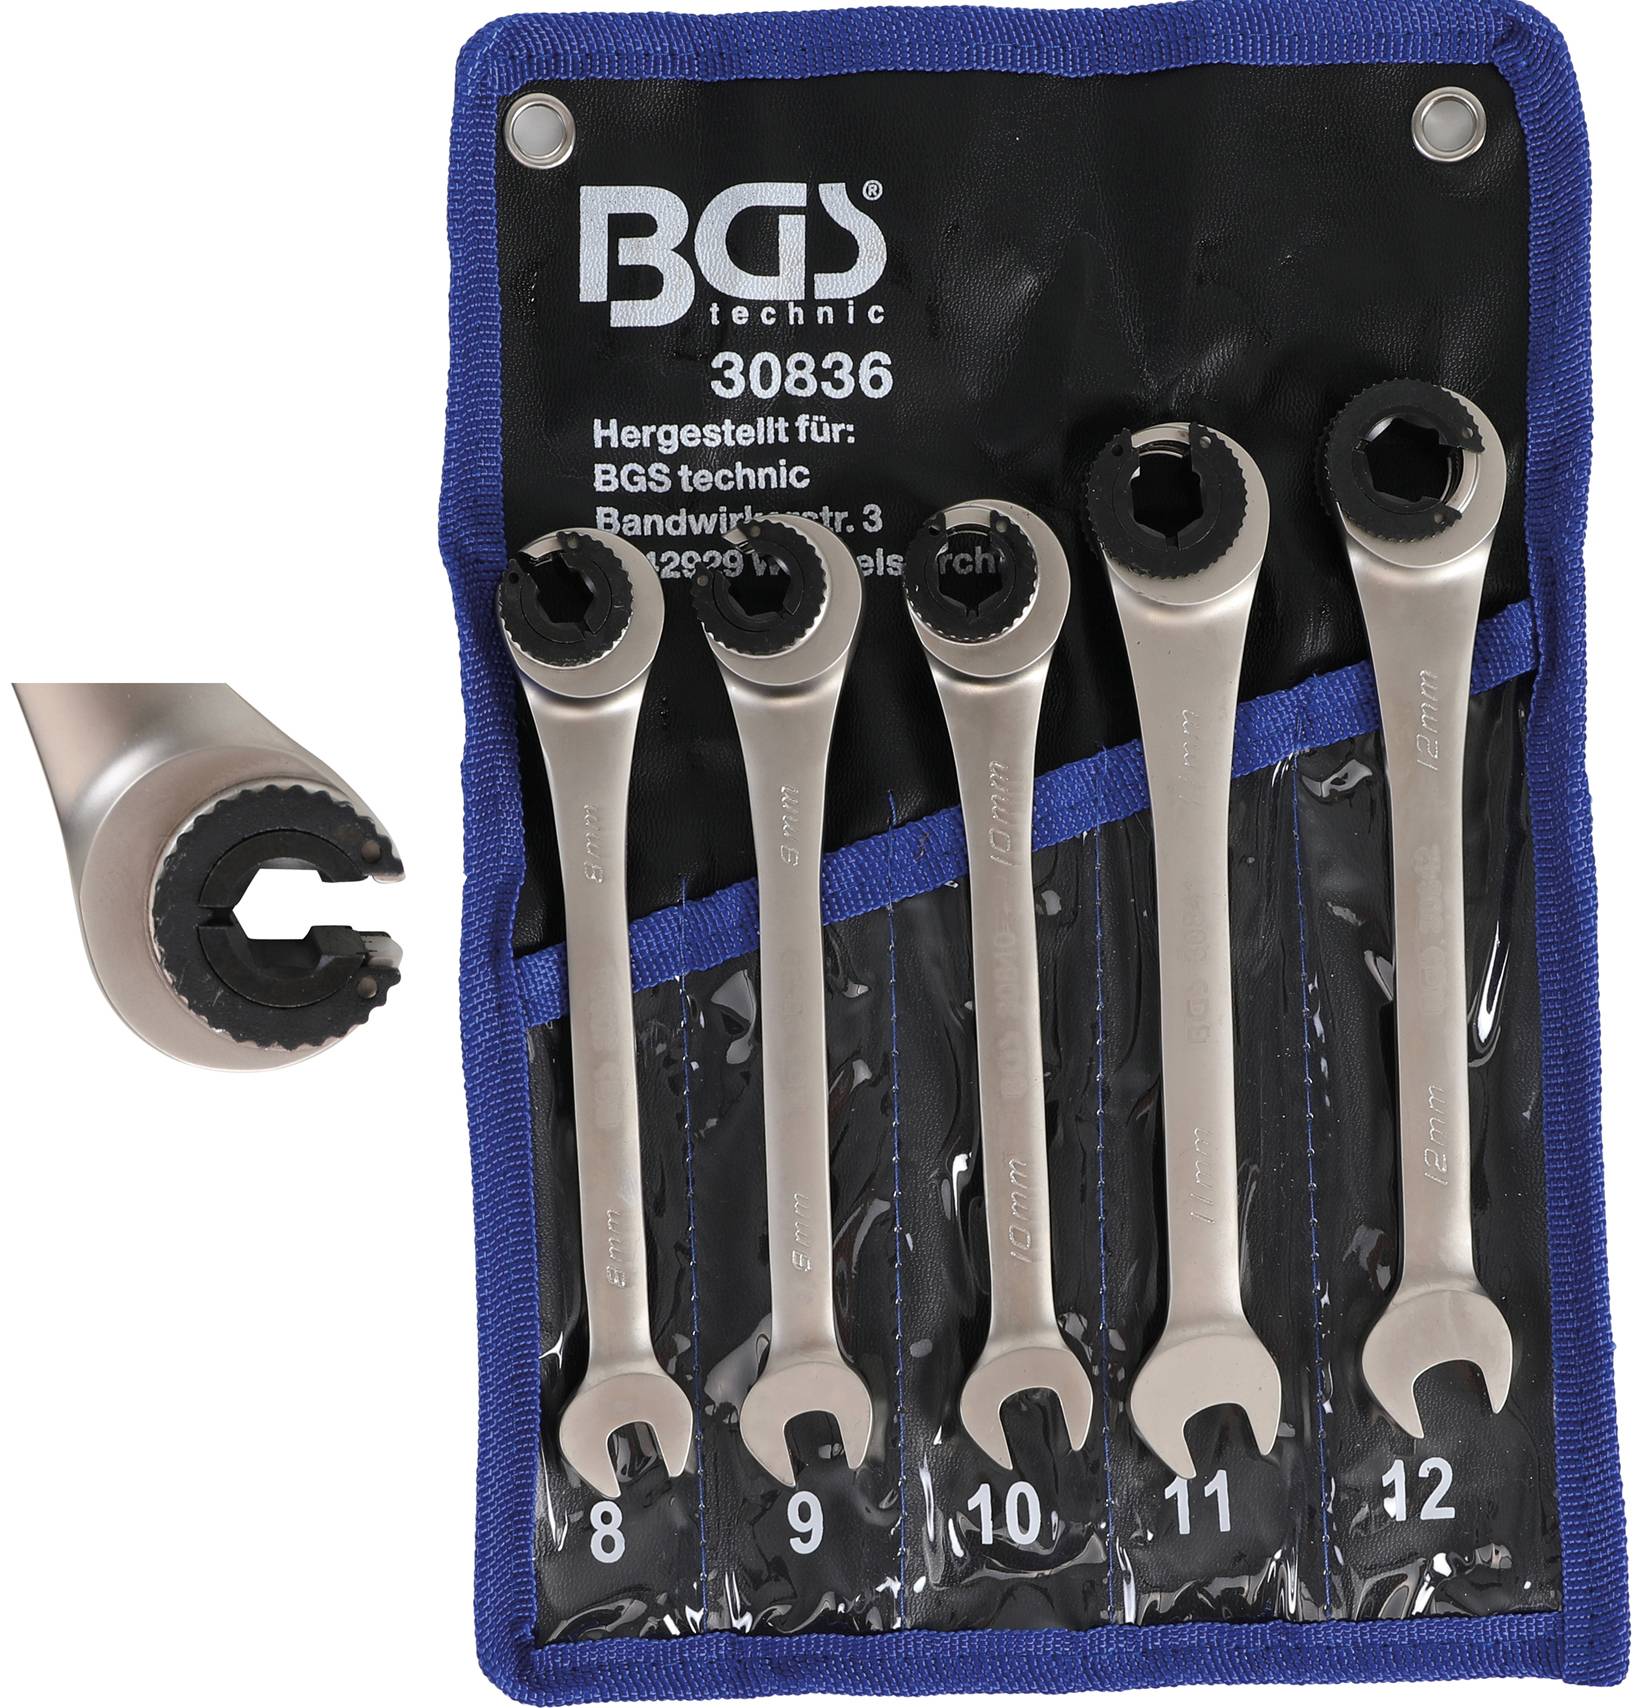 Garten & Heimwerken Baumarkt Werkzeuge Handwerkzeuge Werkzeugschlüssel Ringratschenschlüssel mit Gelenk, Ringratschenschlüsselsatz 